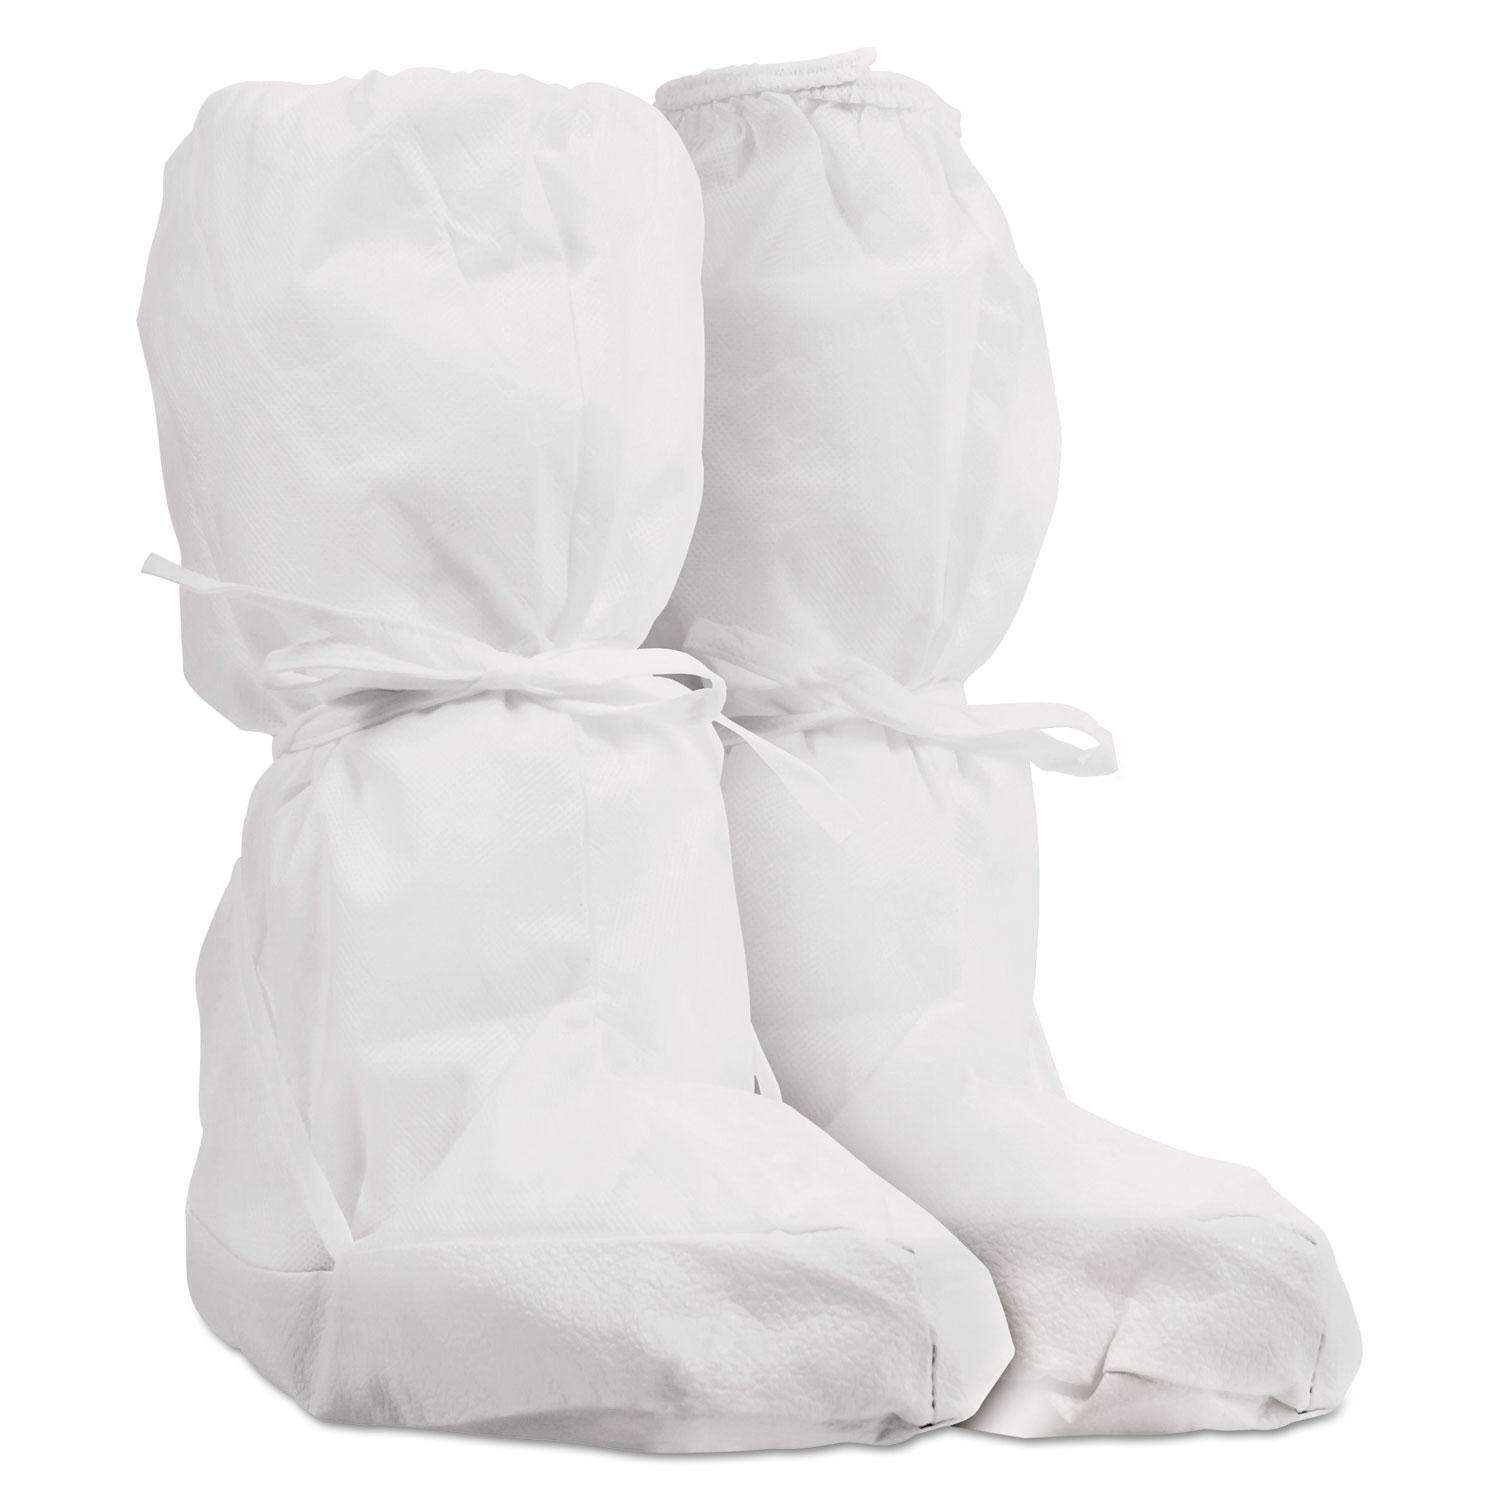 Pure A5 Sterile Boot Covers, White, Small/Medium, 30/Carton